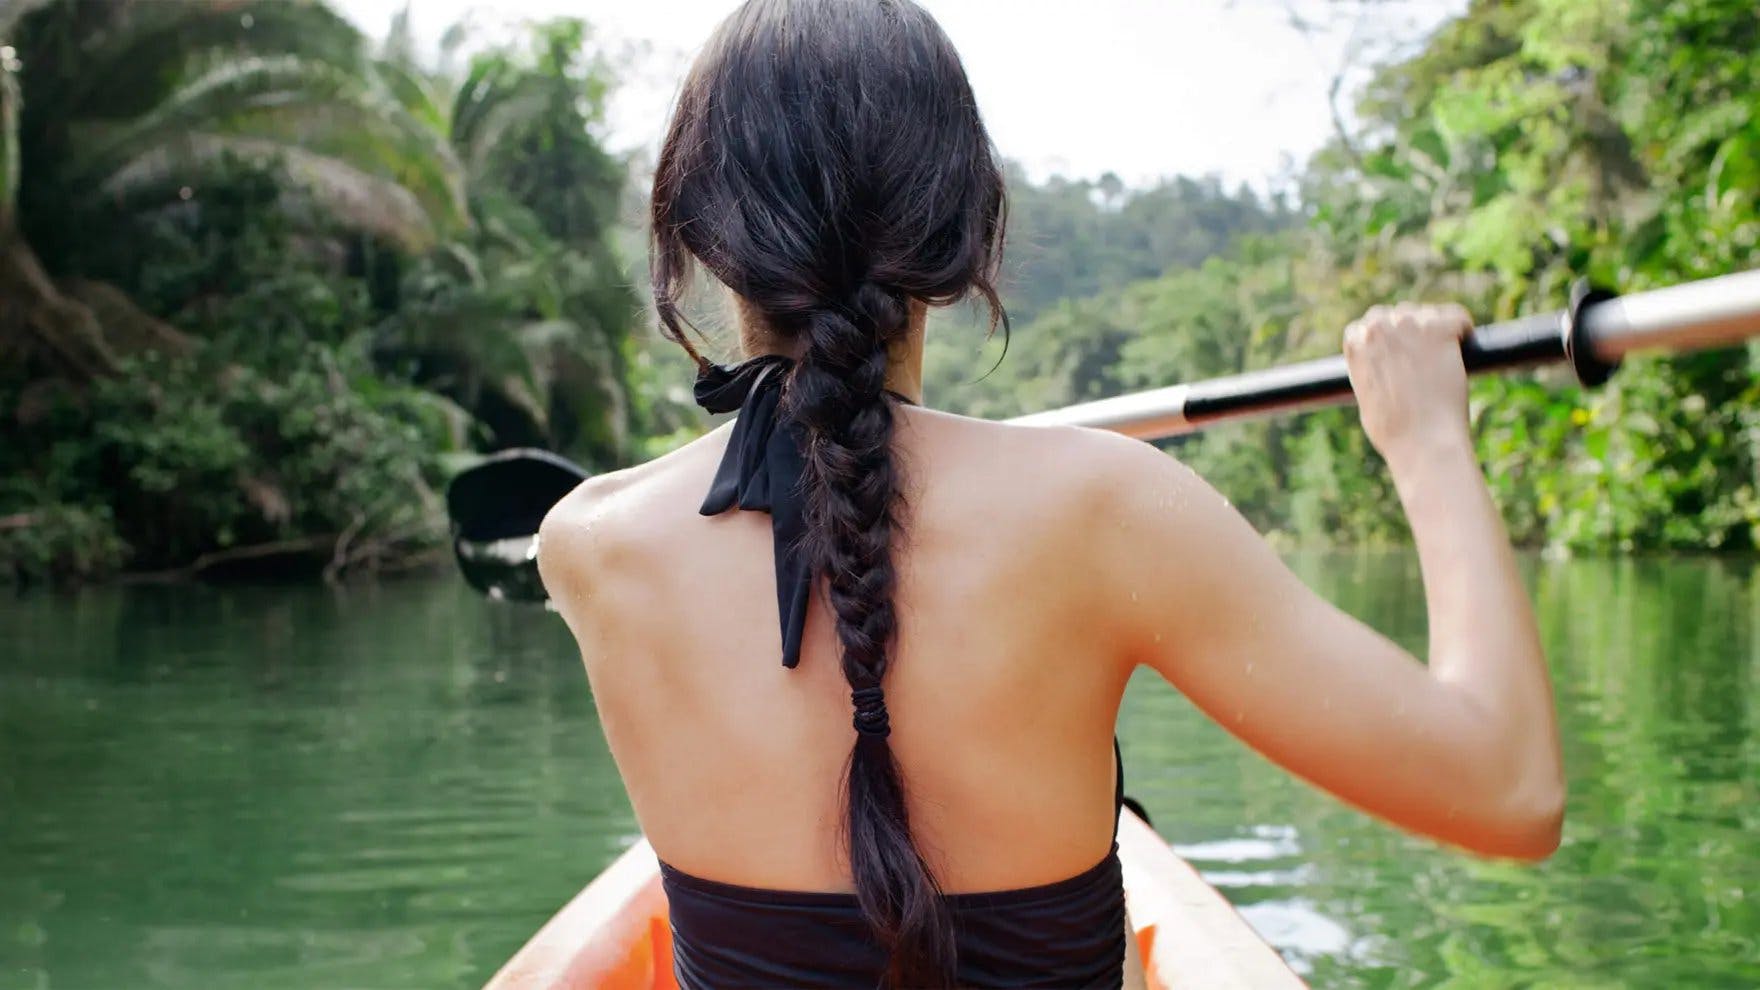 Mujer con cabello largo y negro en una trenza navegando en kayak por un río de espaldas a la cámara